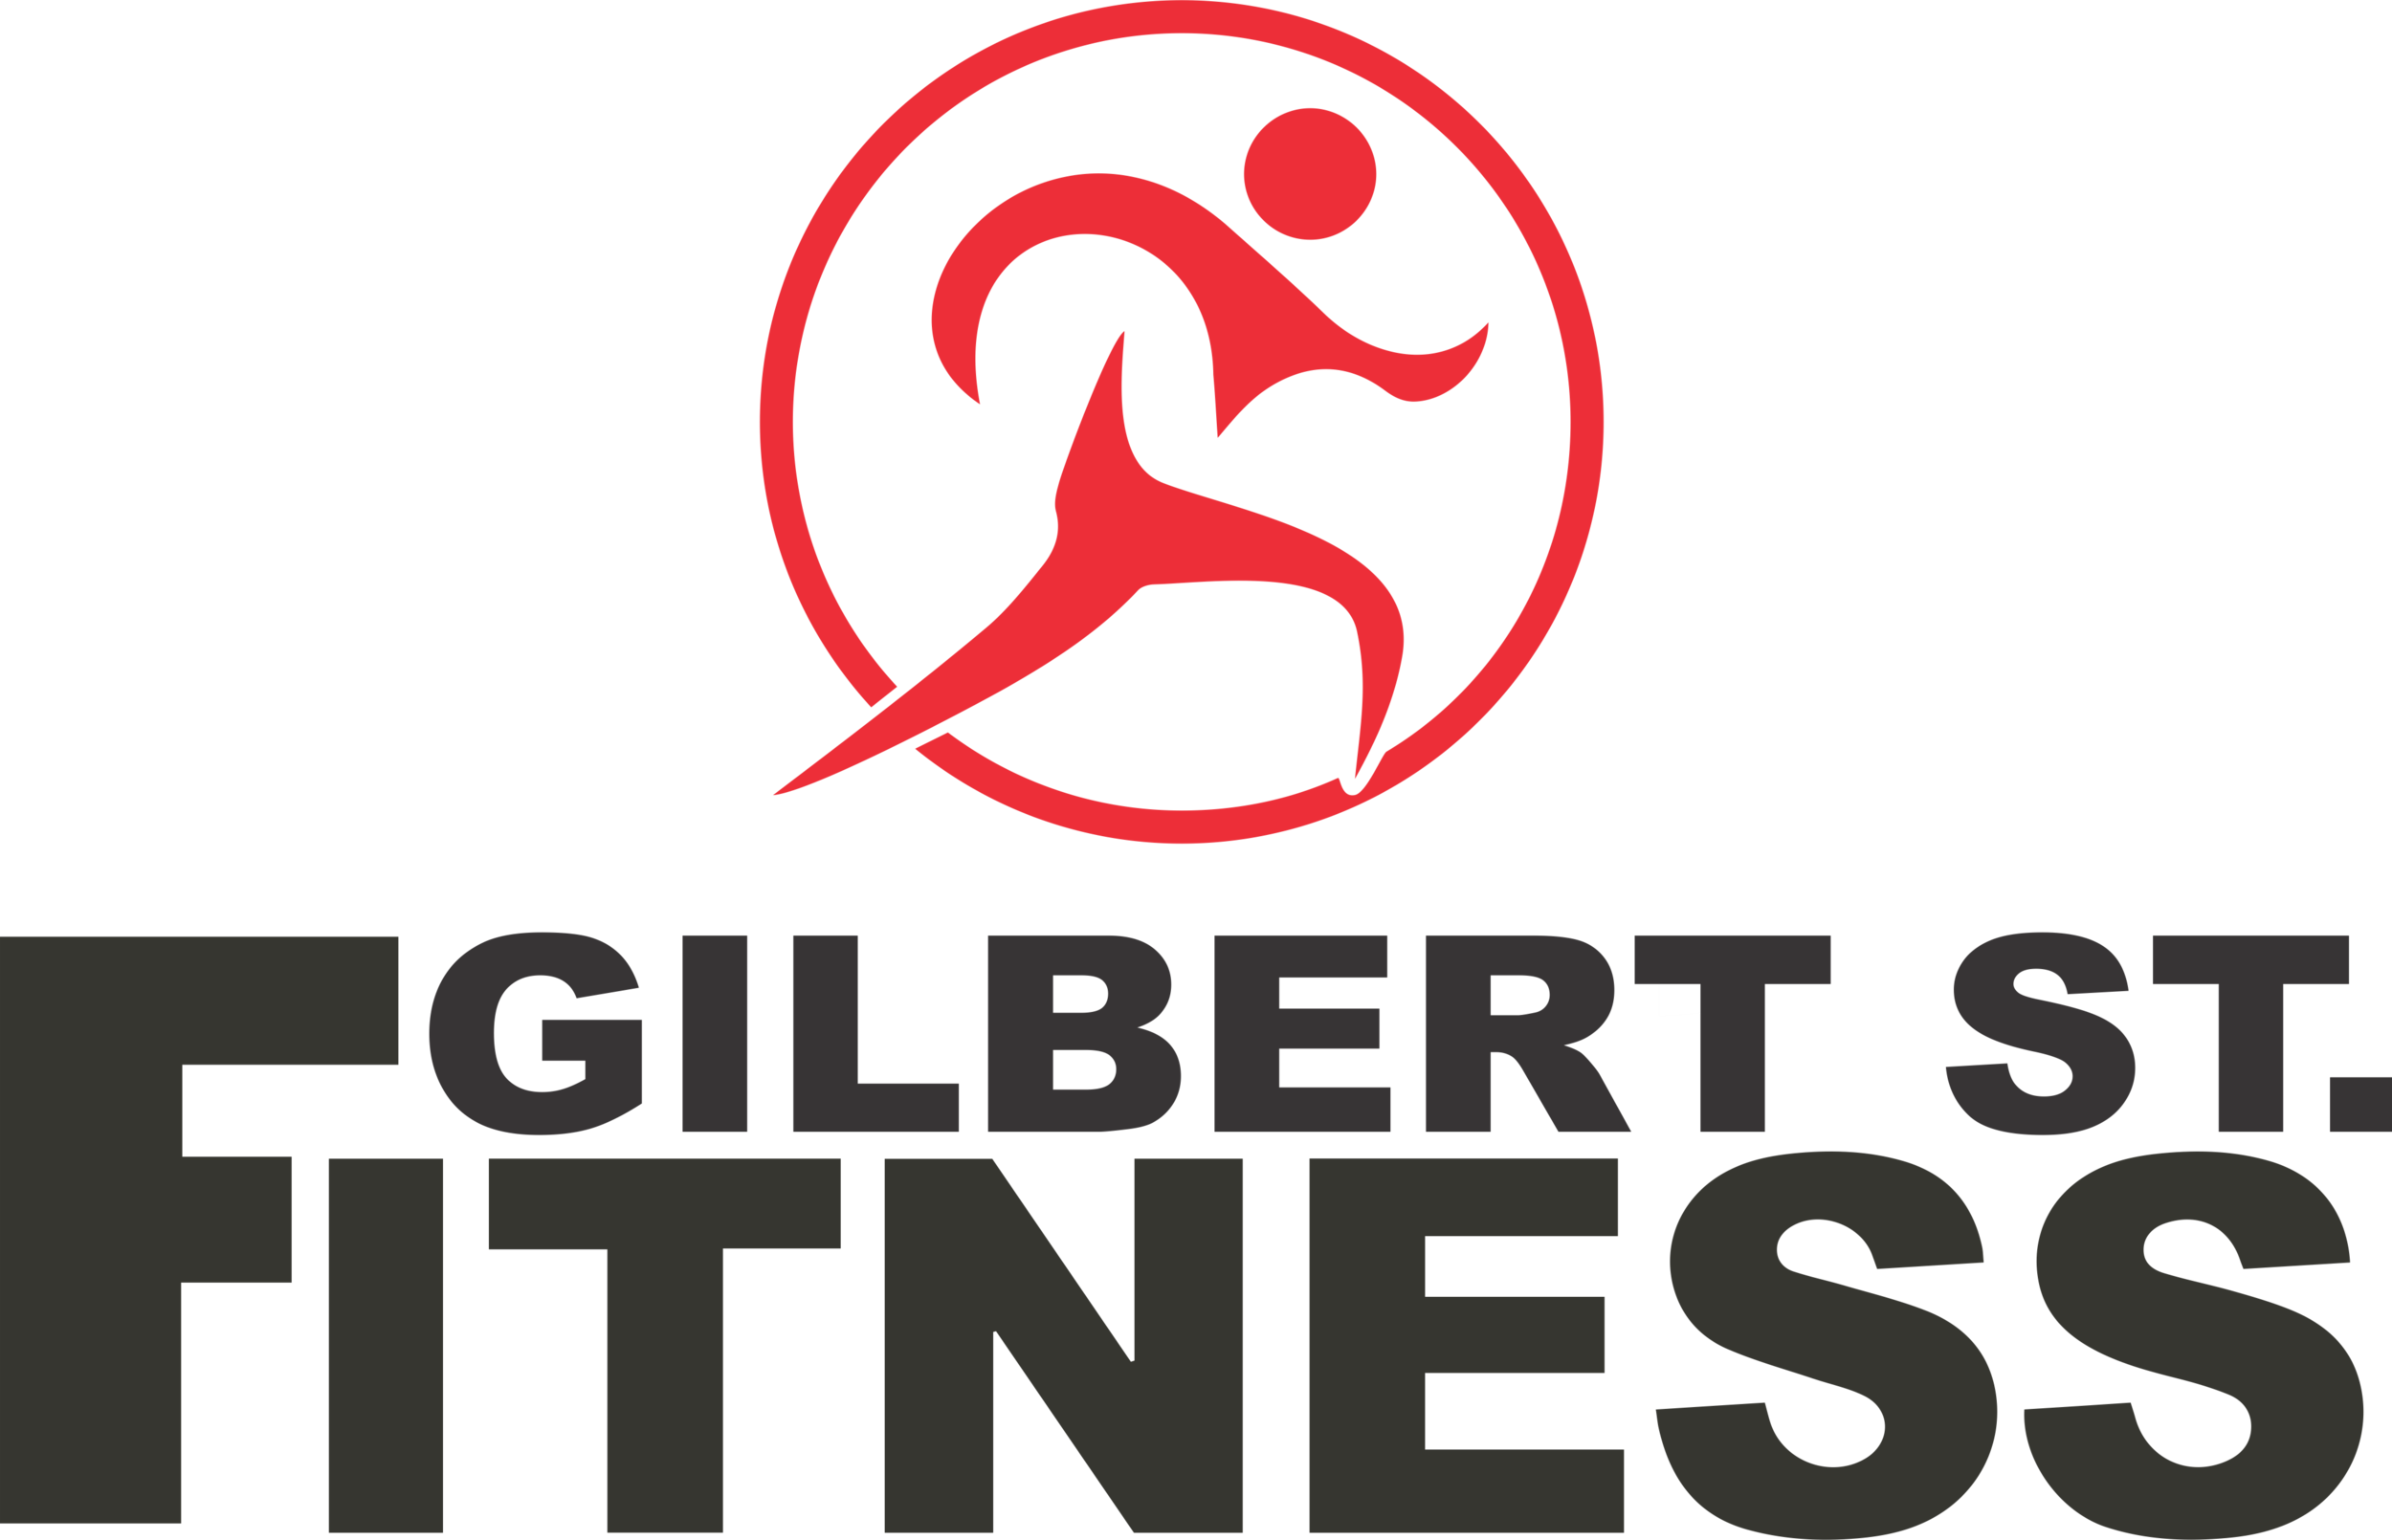 Gilbert Street Fitness Logo.png